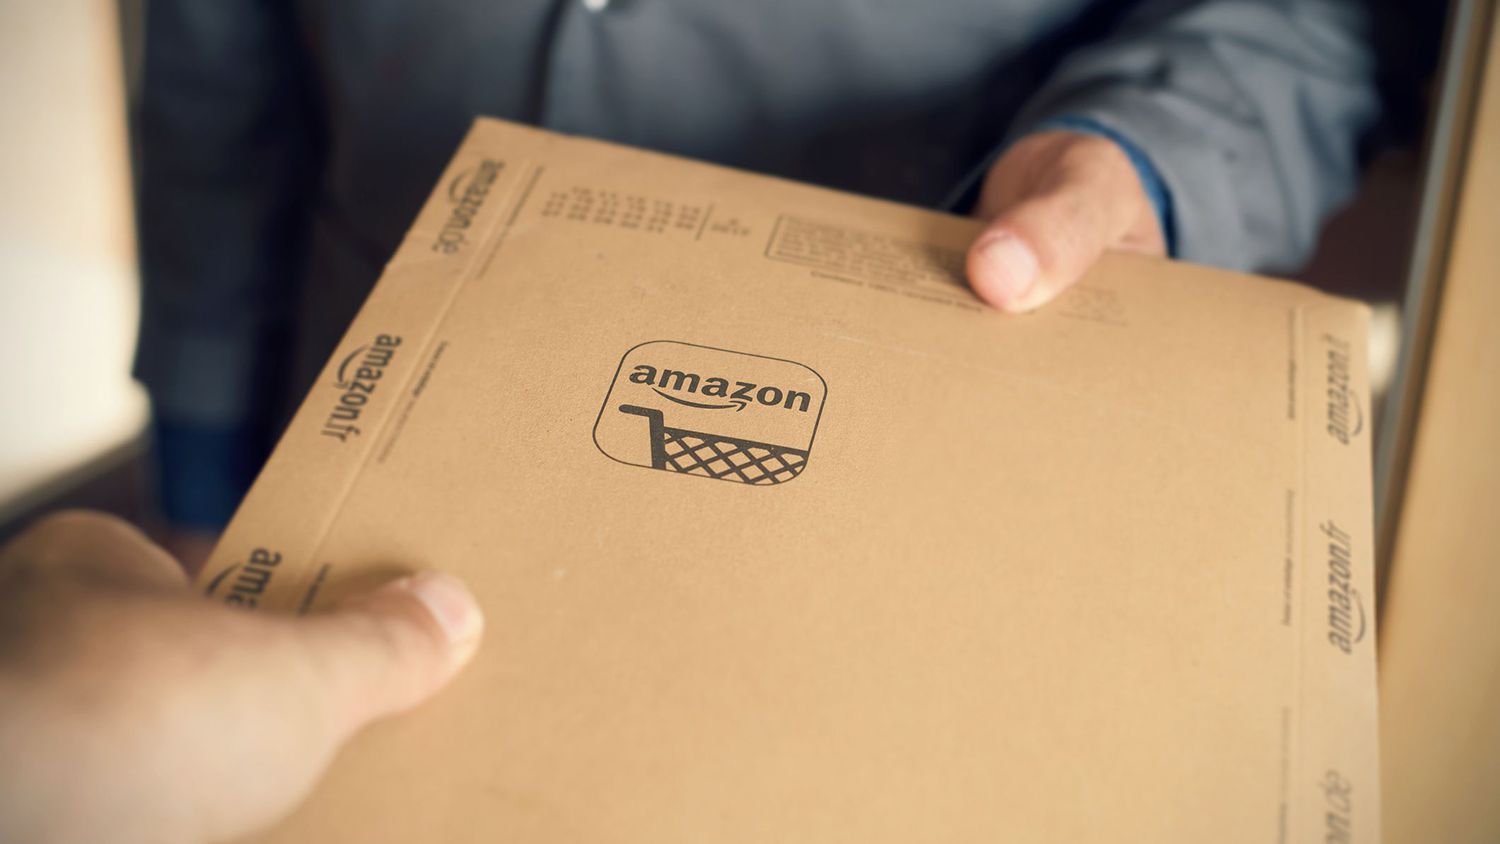 Amazon thực tế là một marketplace buộc bạn phải “chơi” theo luật của nó.